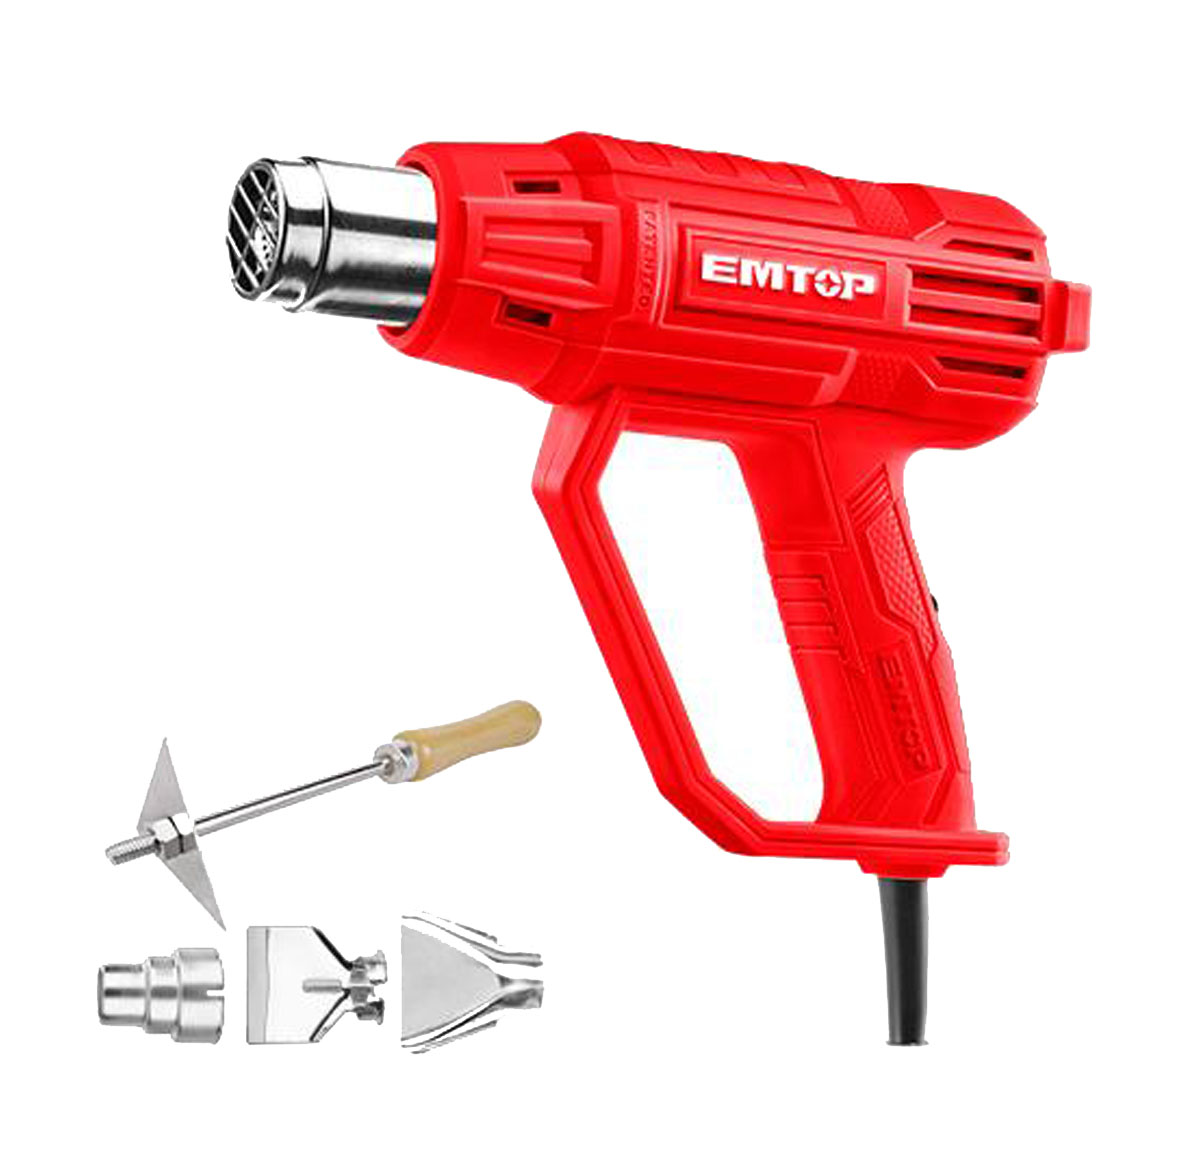 EMTOP Heat gun EHGN20002